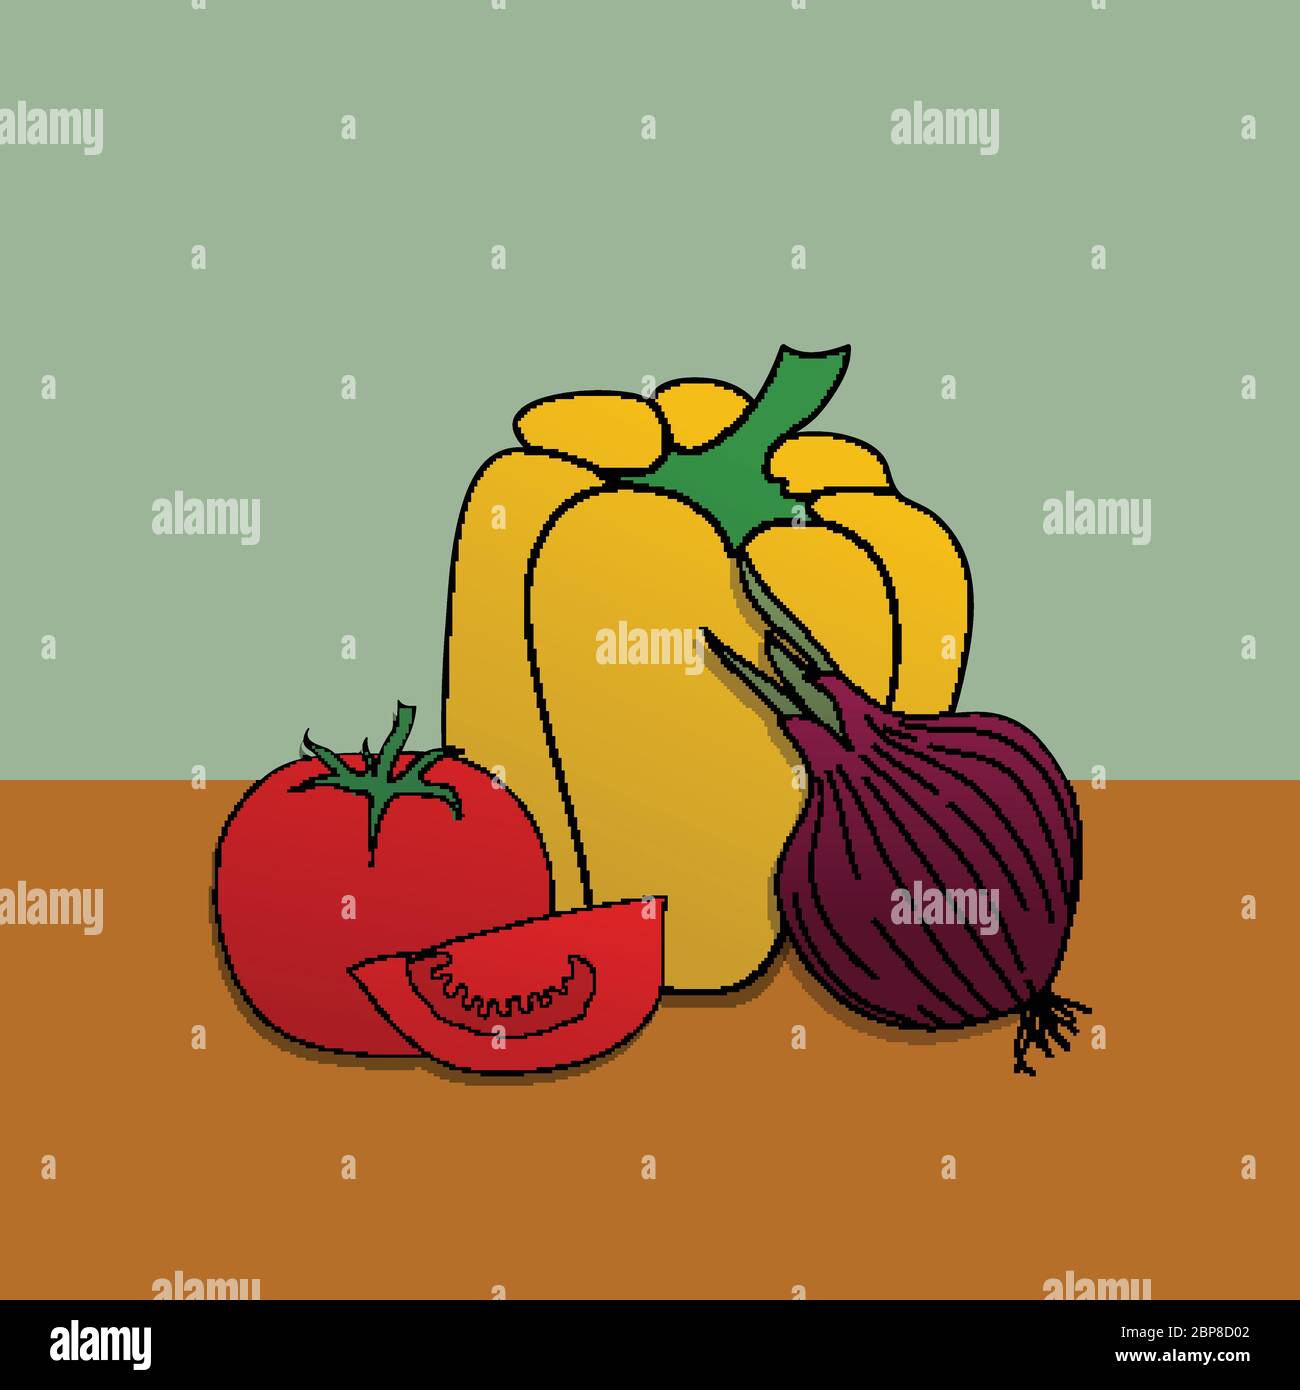 Illustration de la collection de légumes dessinés à la main avec des tomates rouges au poivre jaune un oignon sur fond vert et brun Illustration de Vecteur